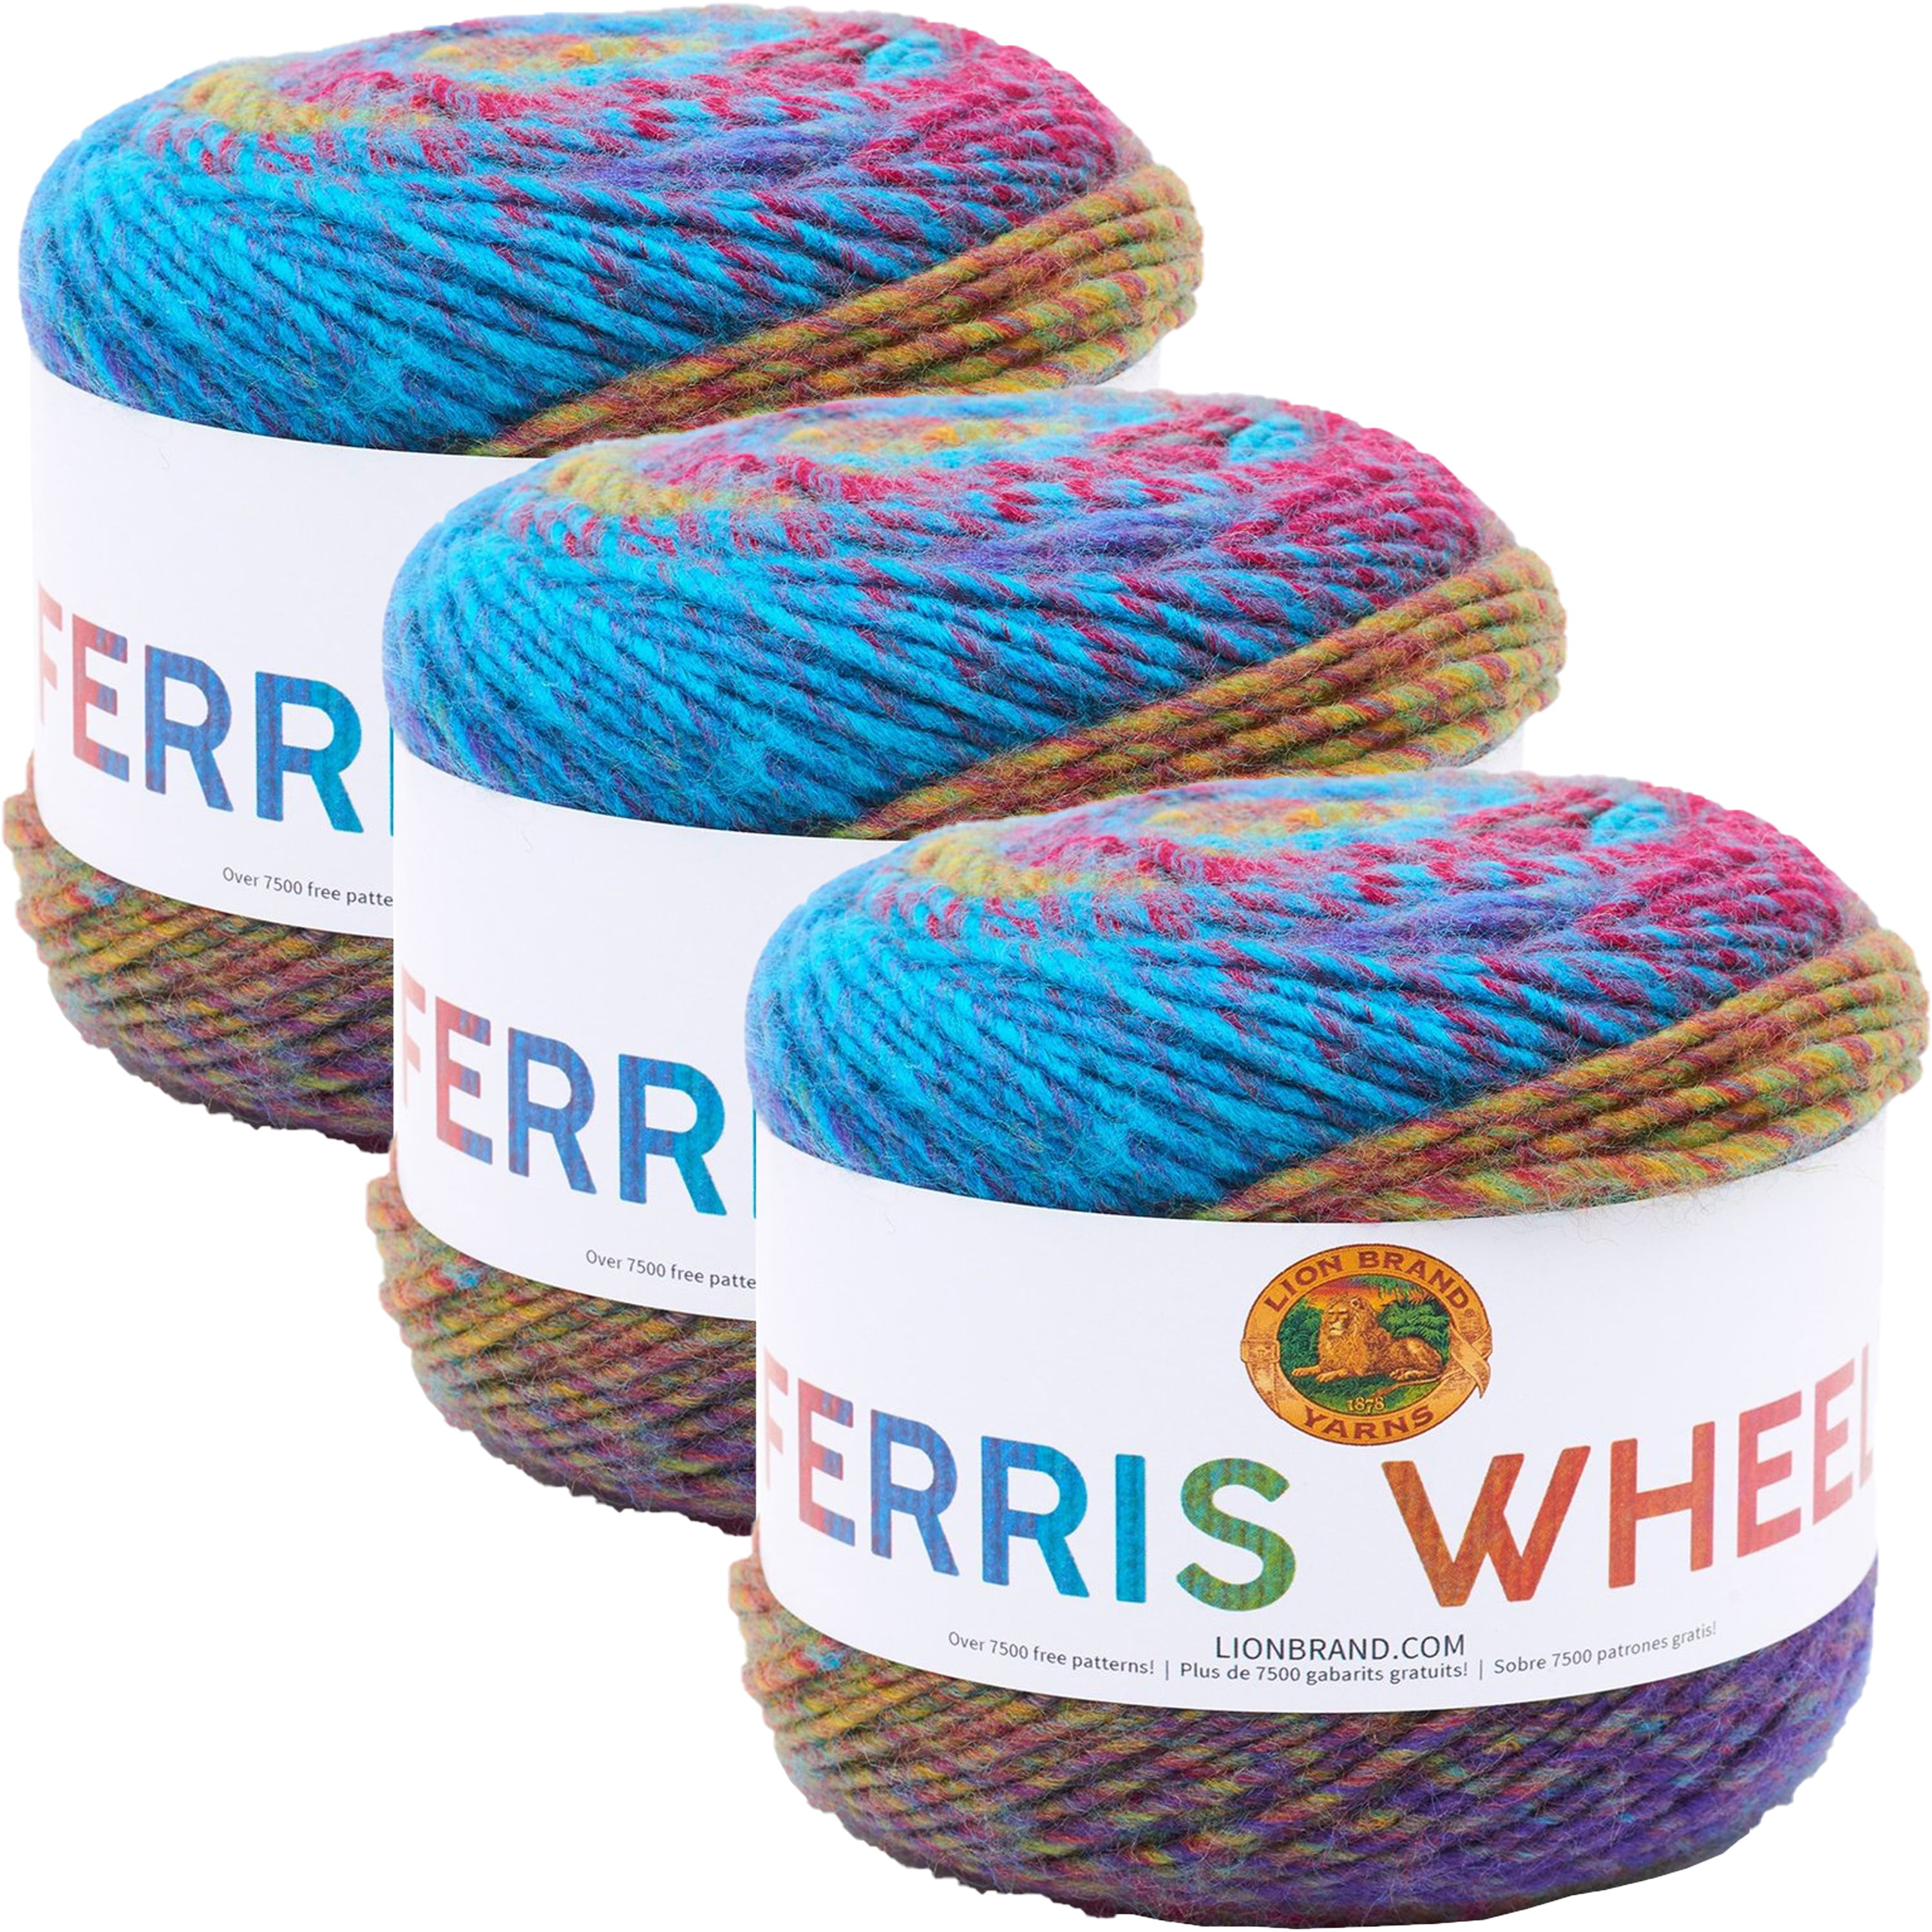 Lion Brand Yarn Ferris Wheel Yarn, Multicolor Yarn for Knitting